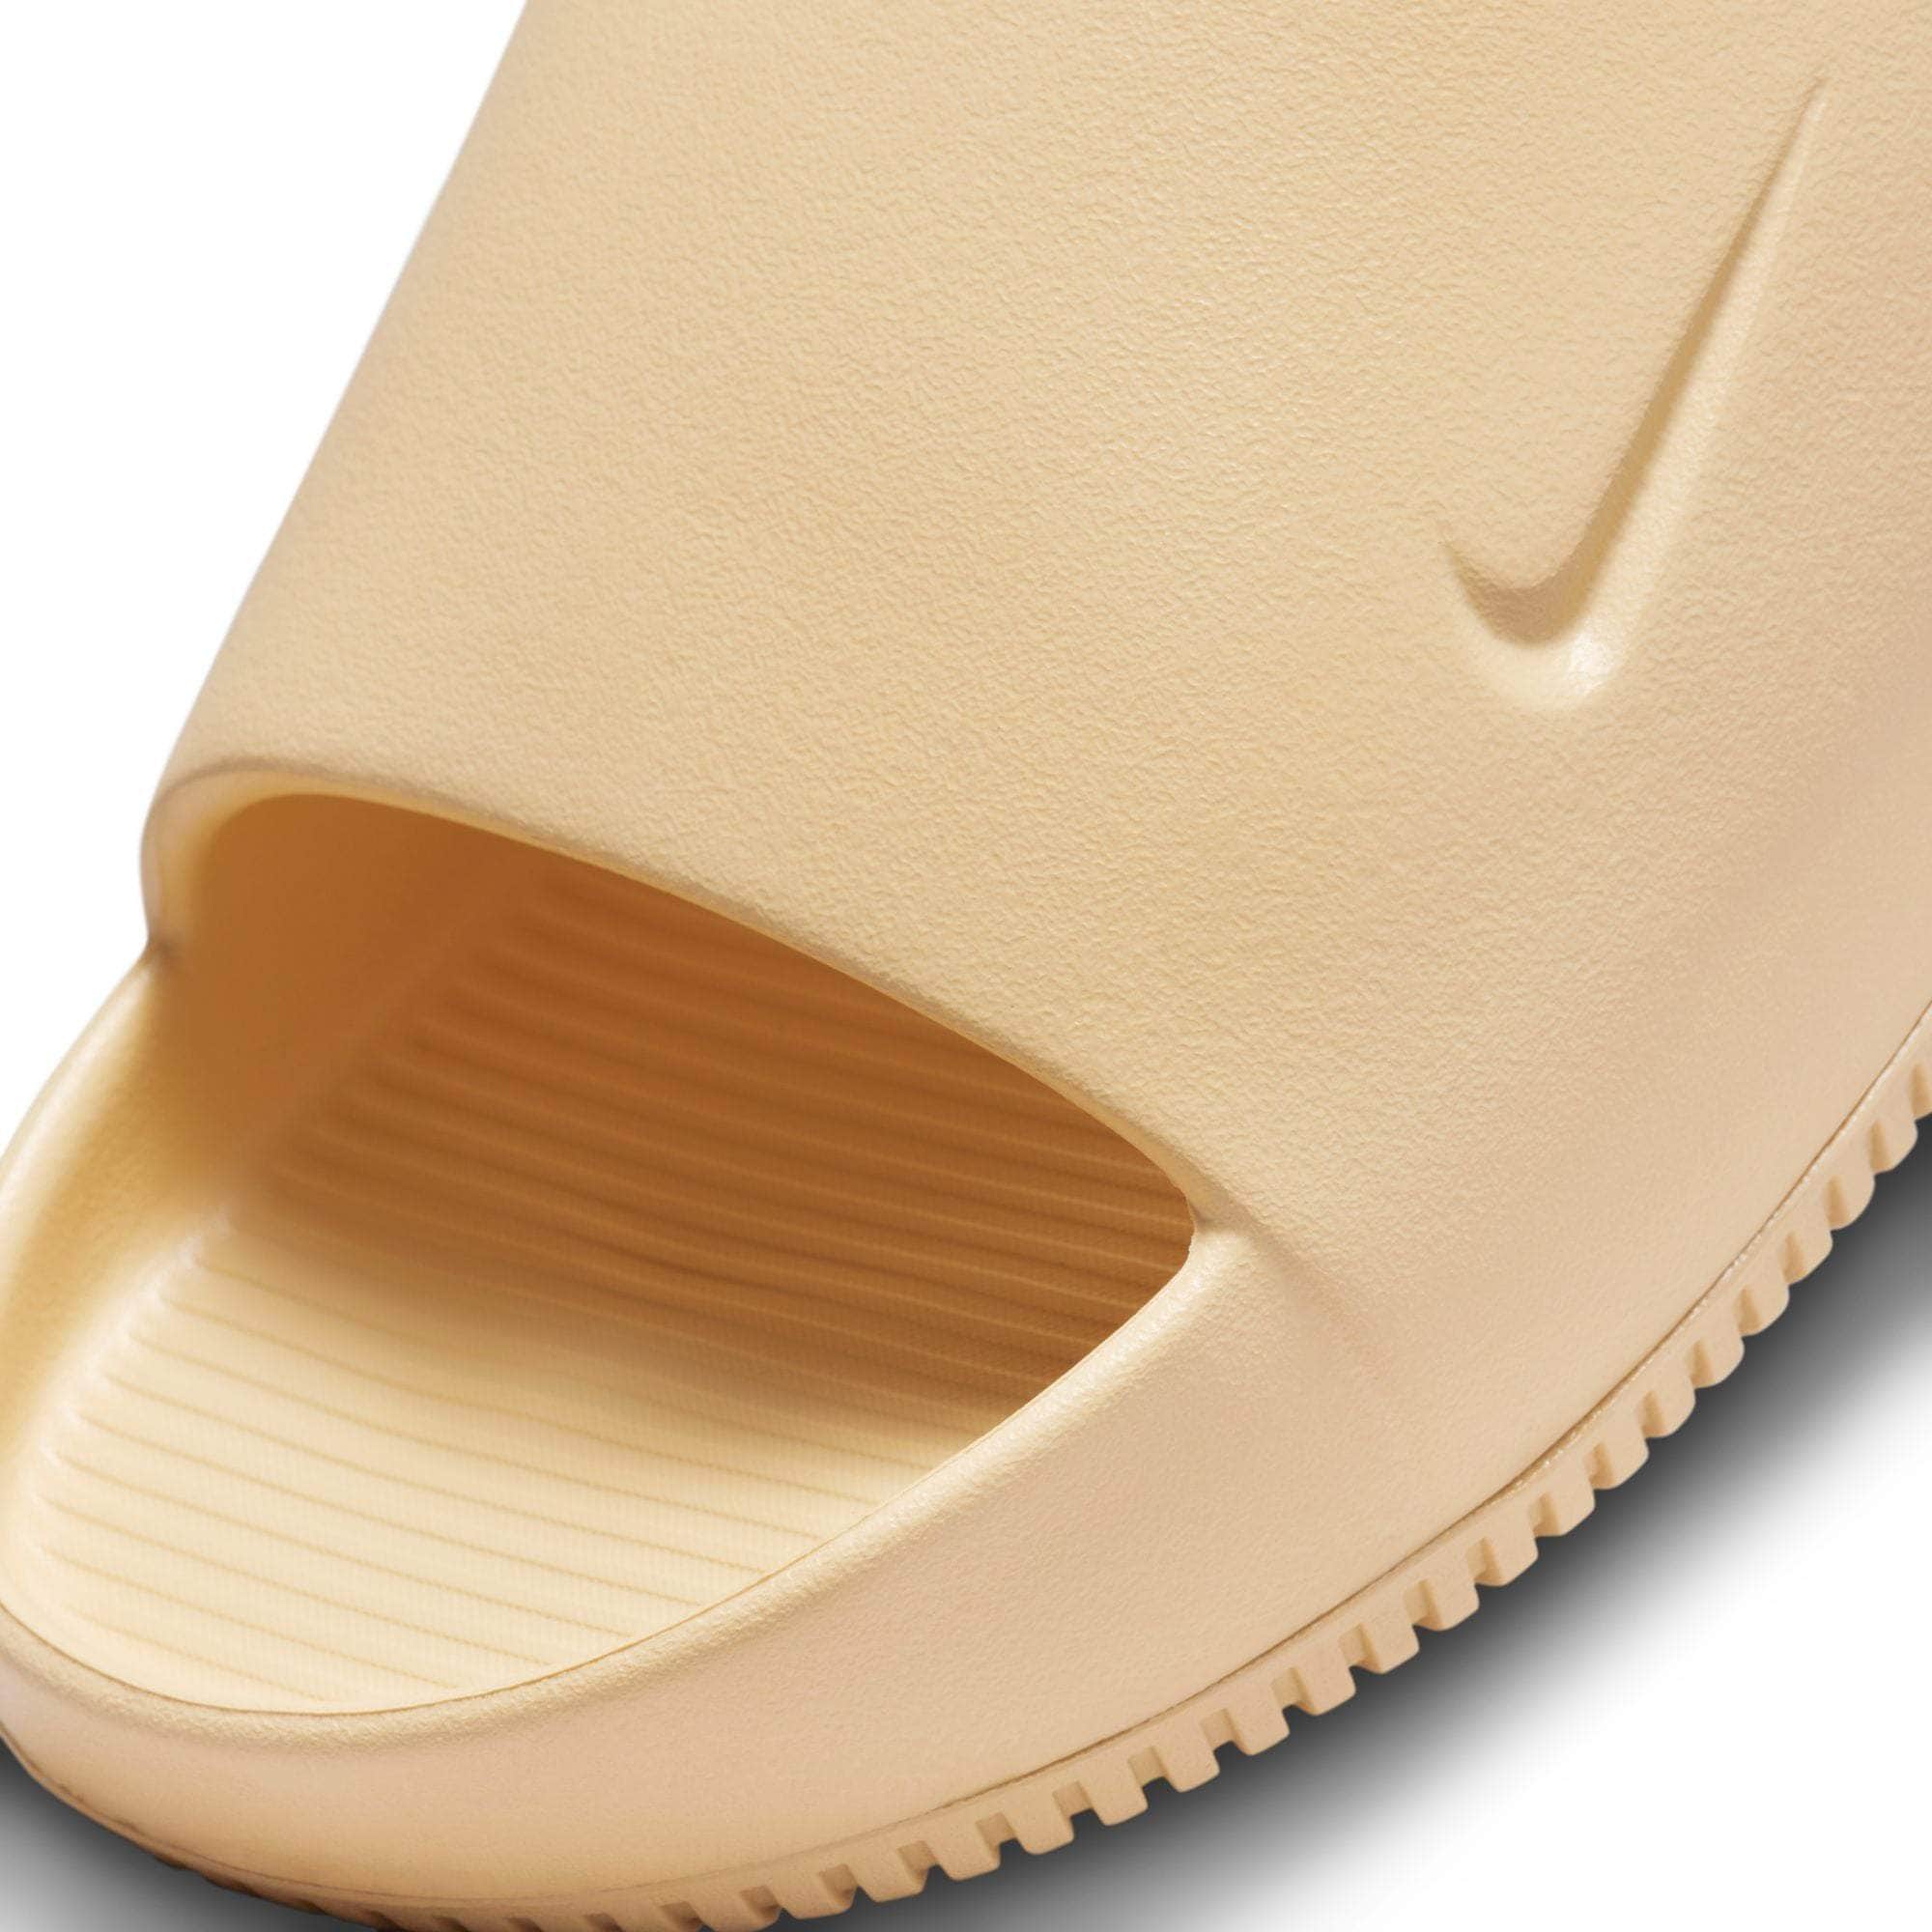 Nike Calm Slide Geode Teal - Size 8 Men